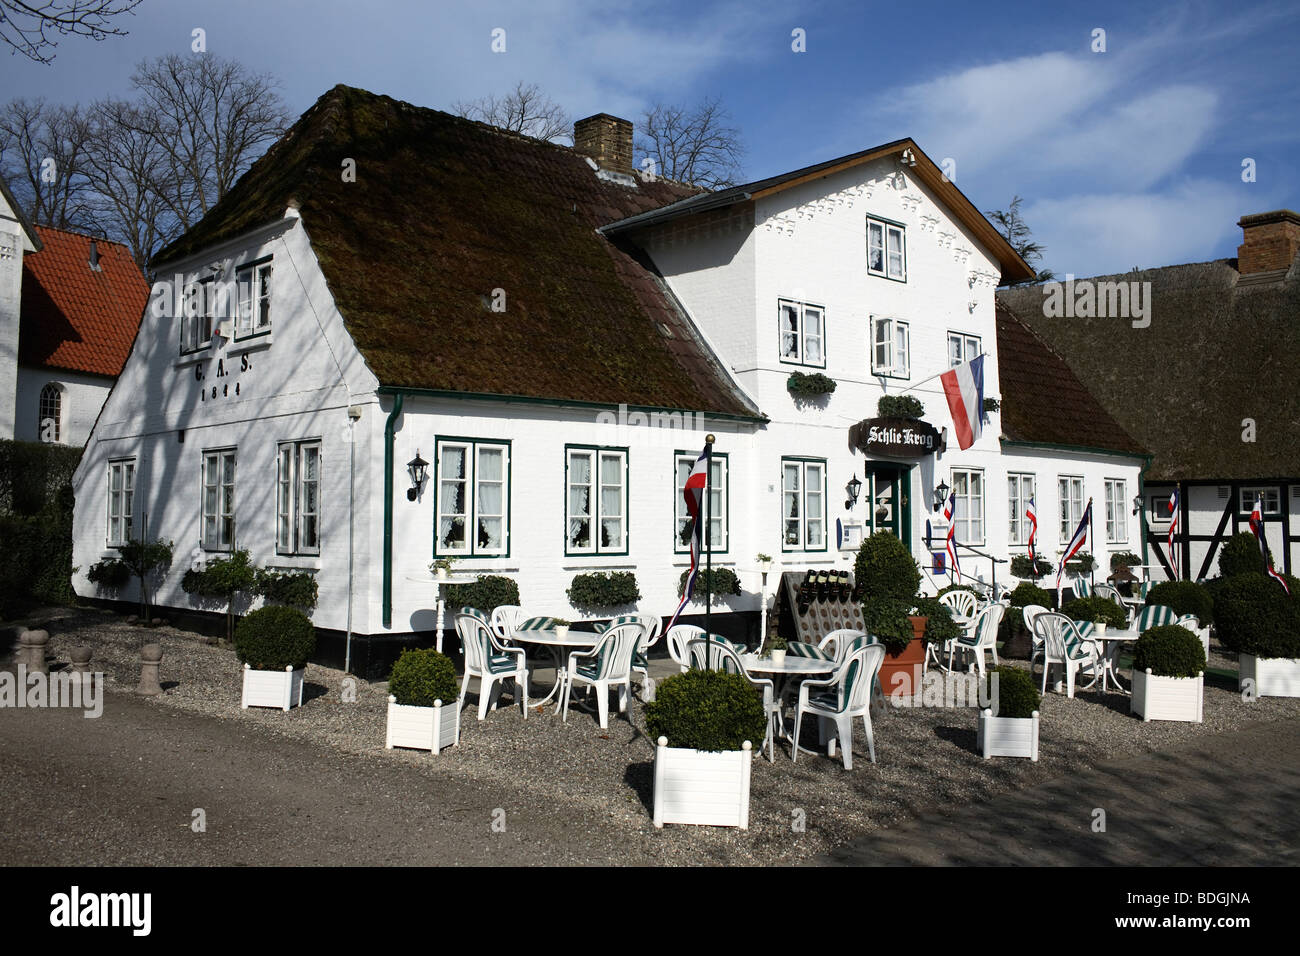 Schlie Krog restaurant, Sieseby, Germany Stock Photo